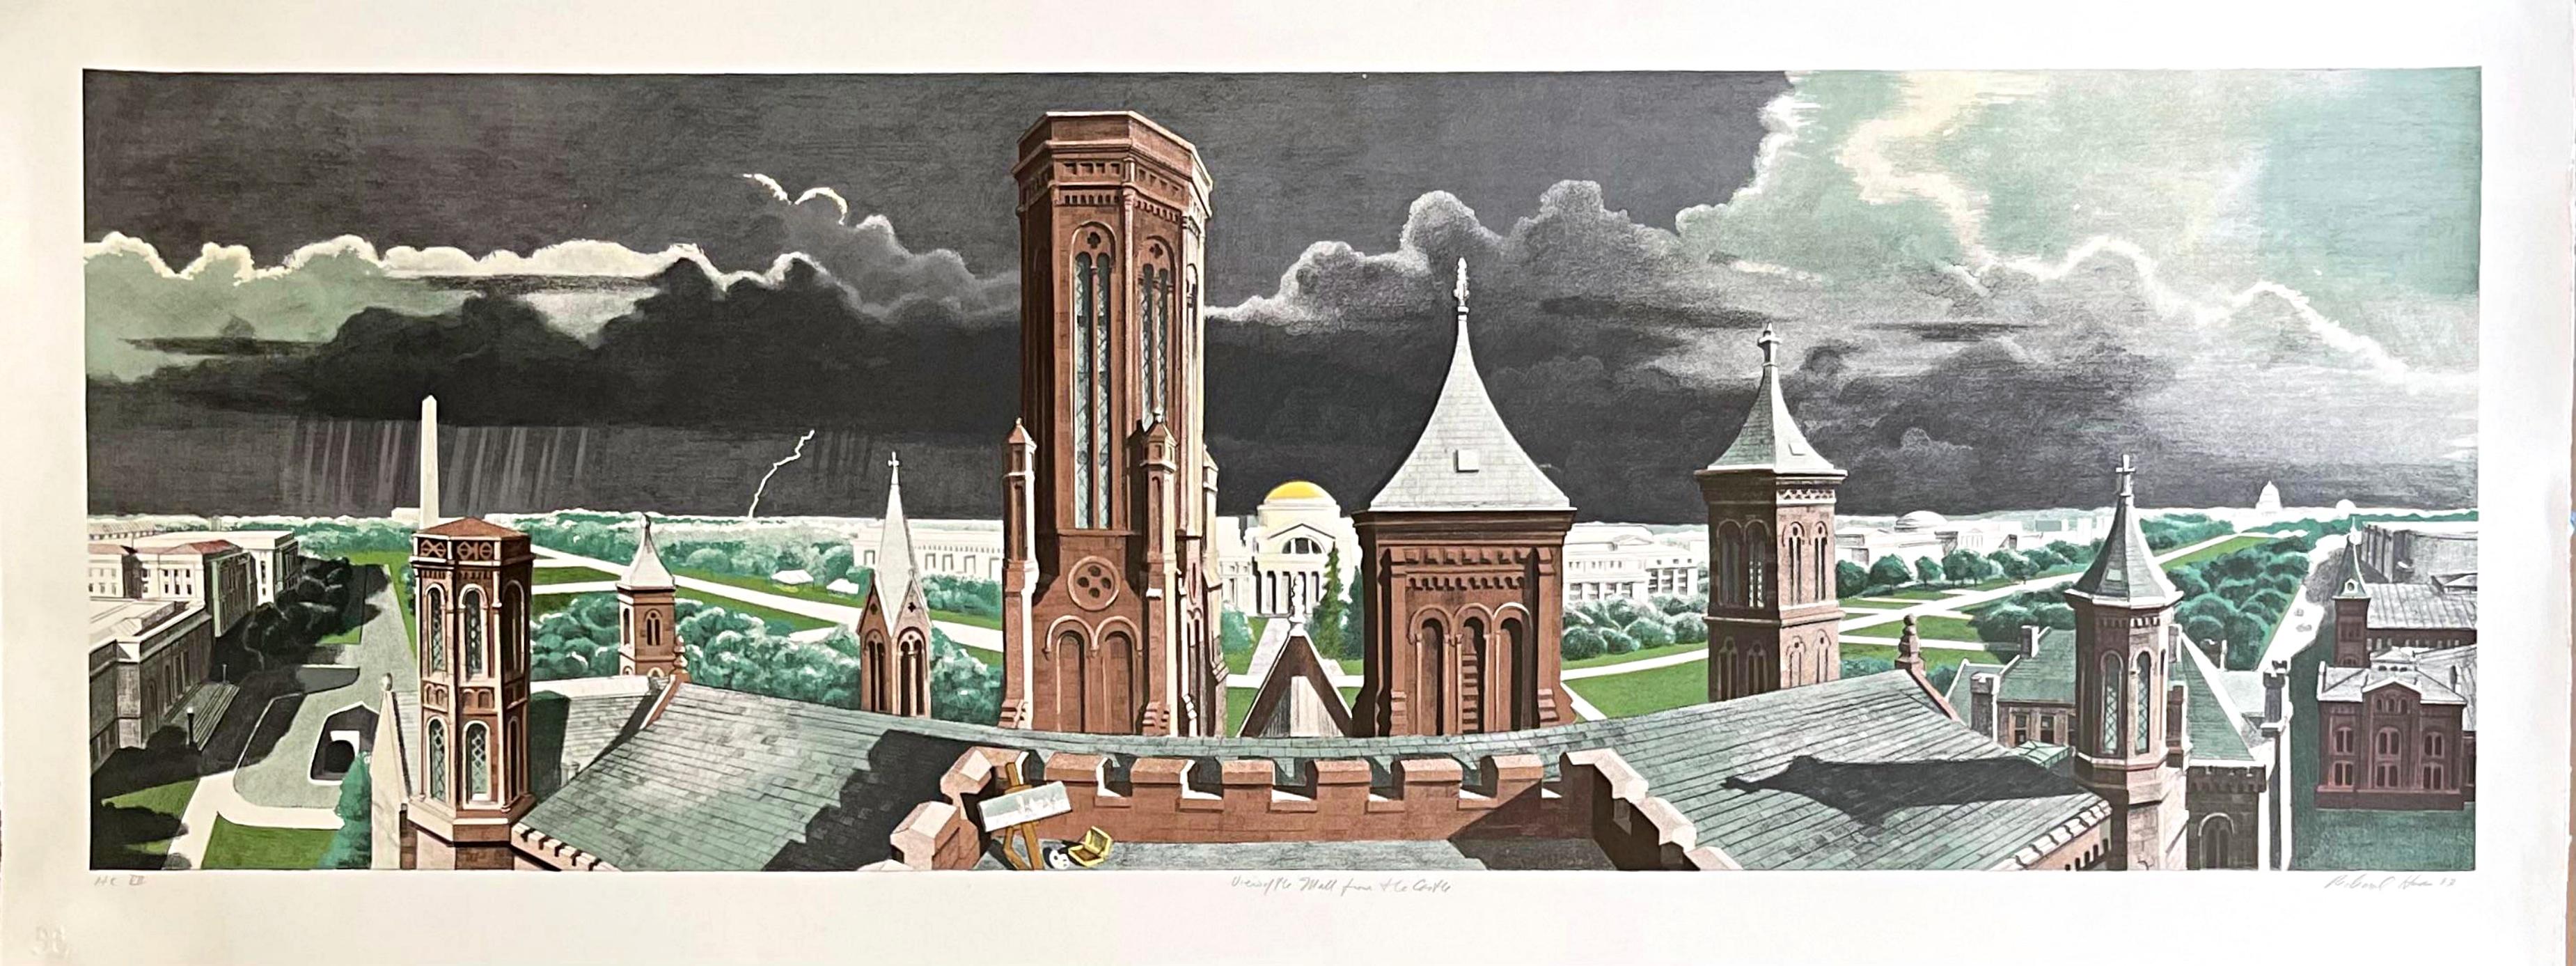 Blick auf die Mall von einem Schlossturm aus – Print von Richard Haas